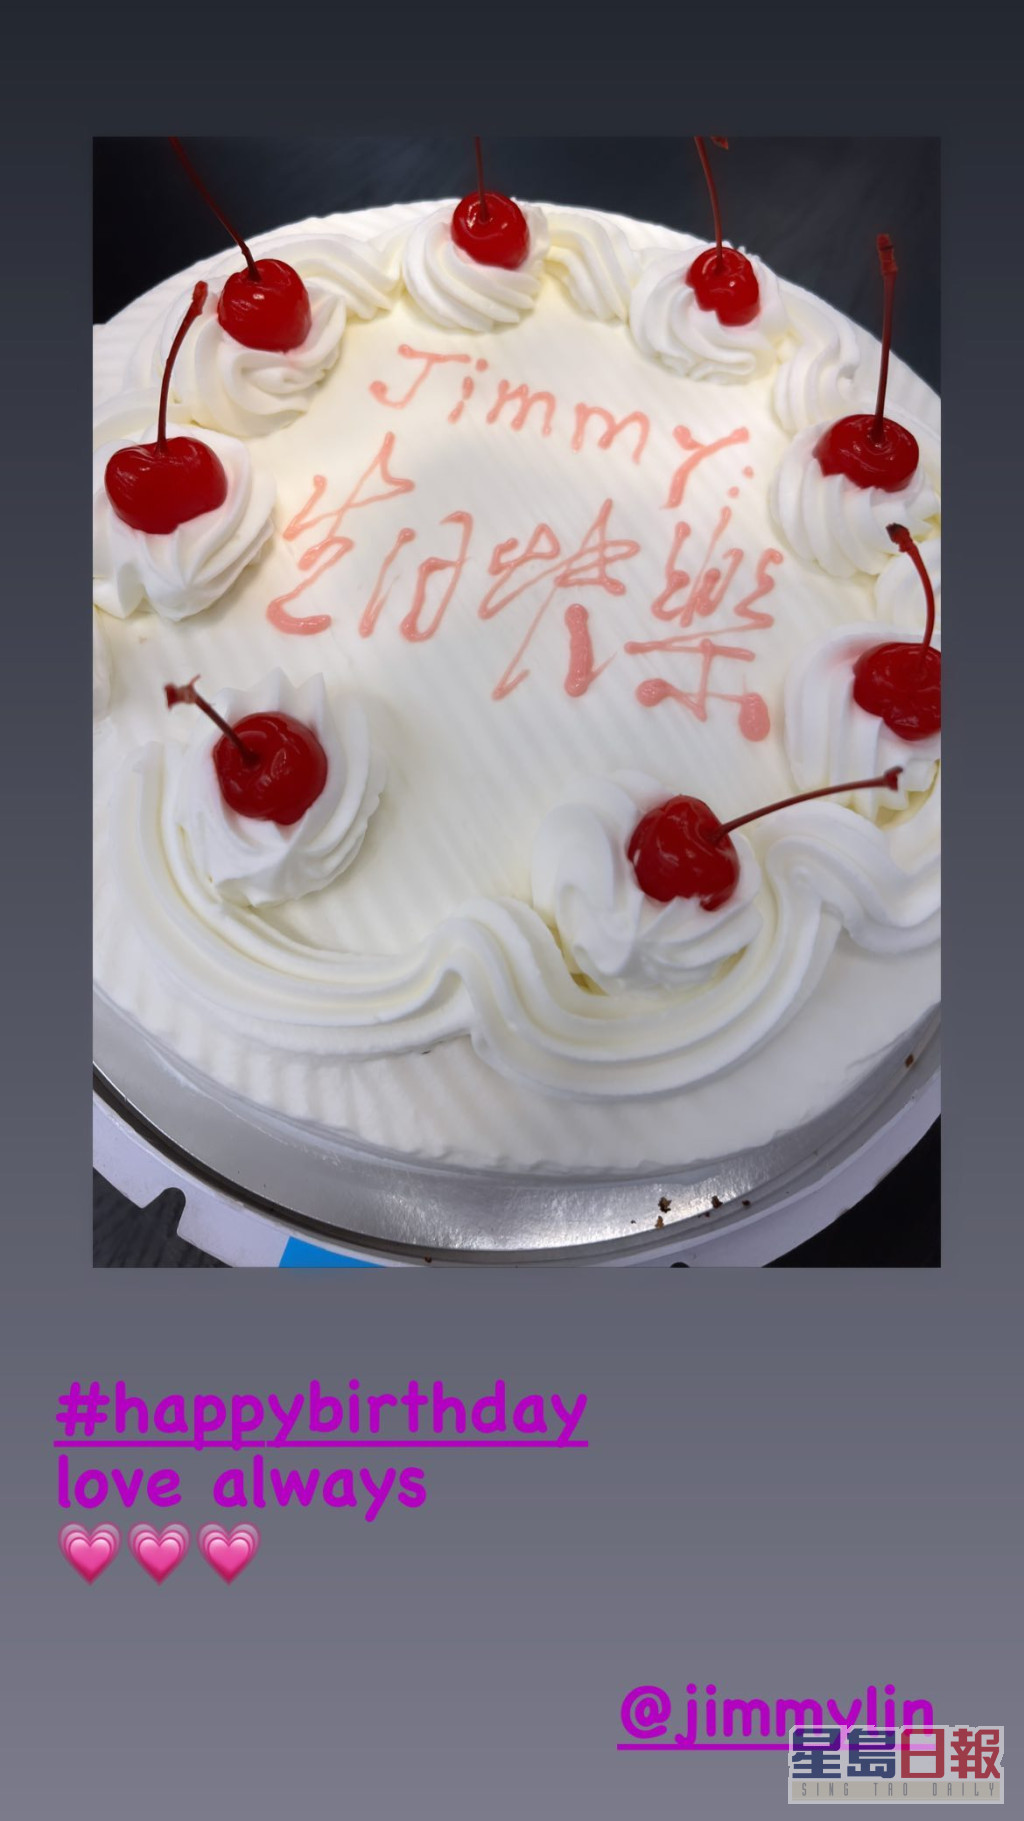 林志穎的生日蛋糕好傳統。